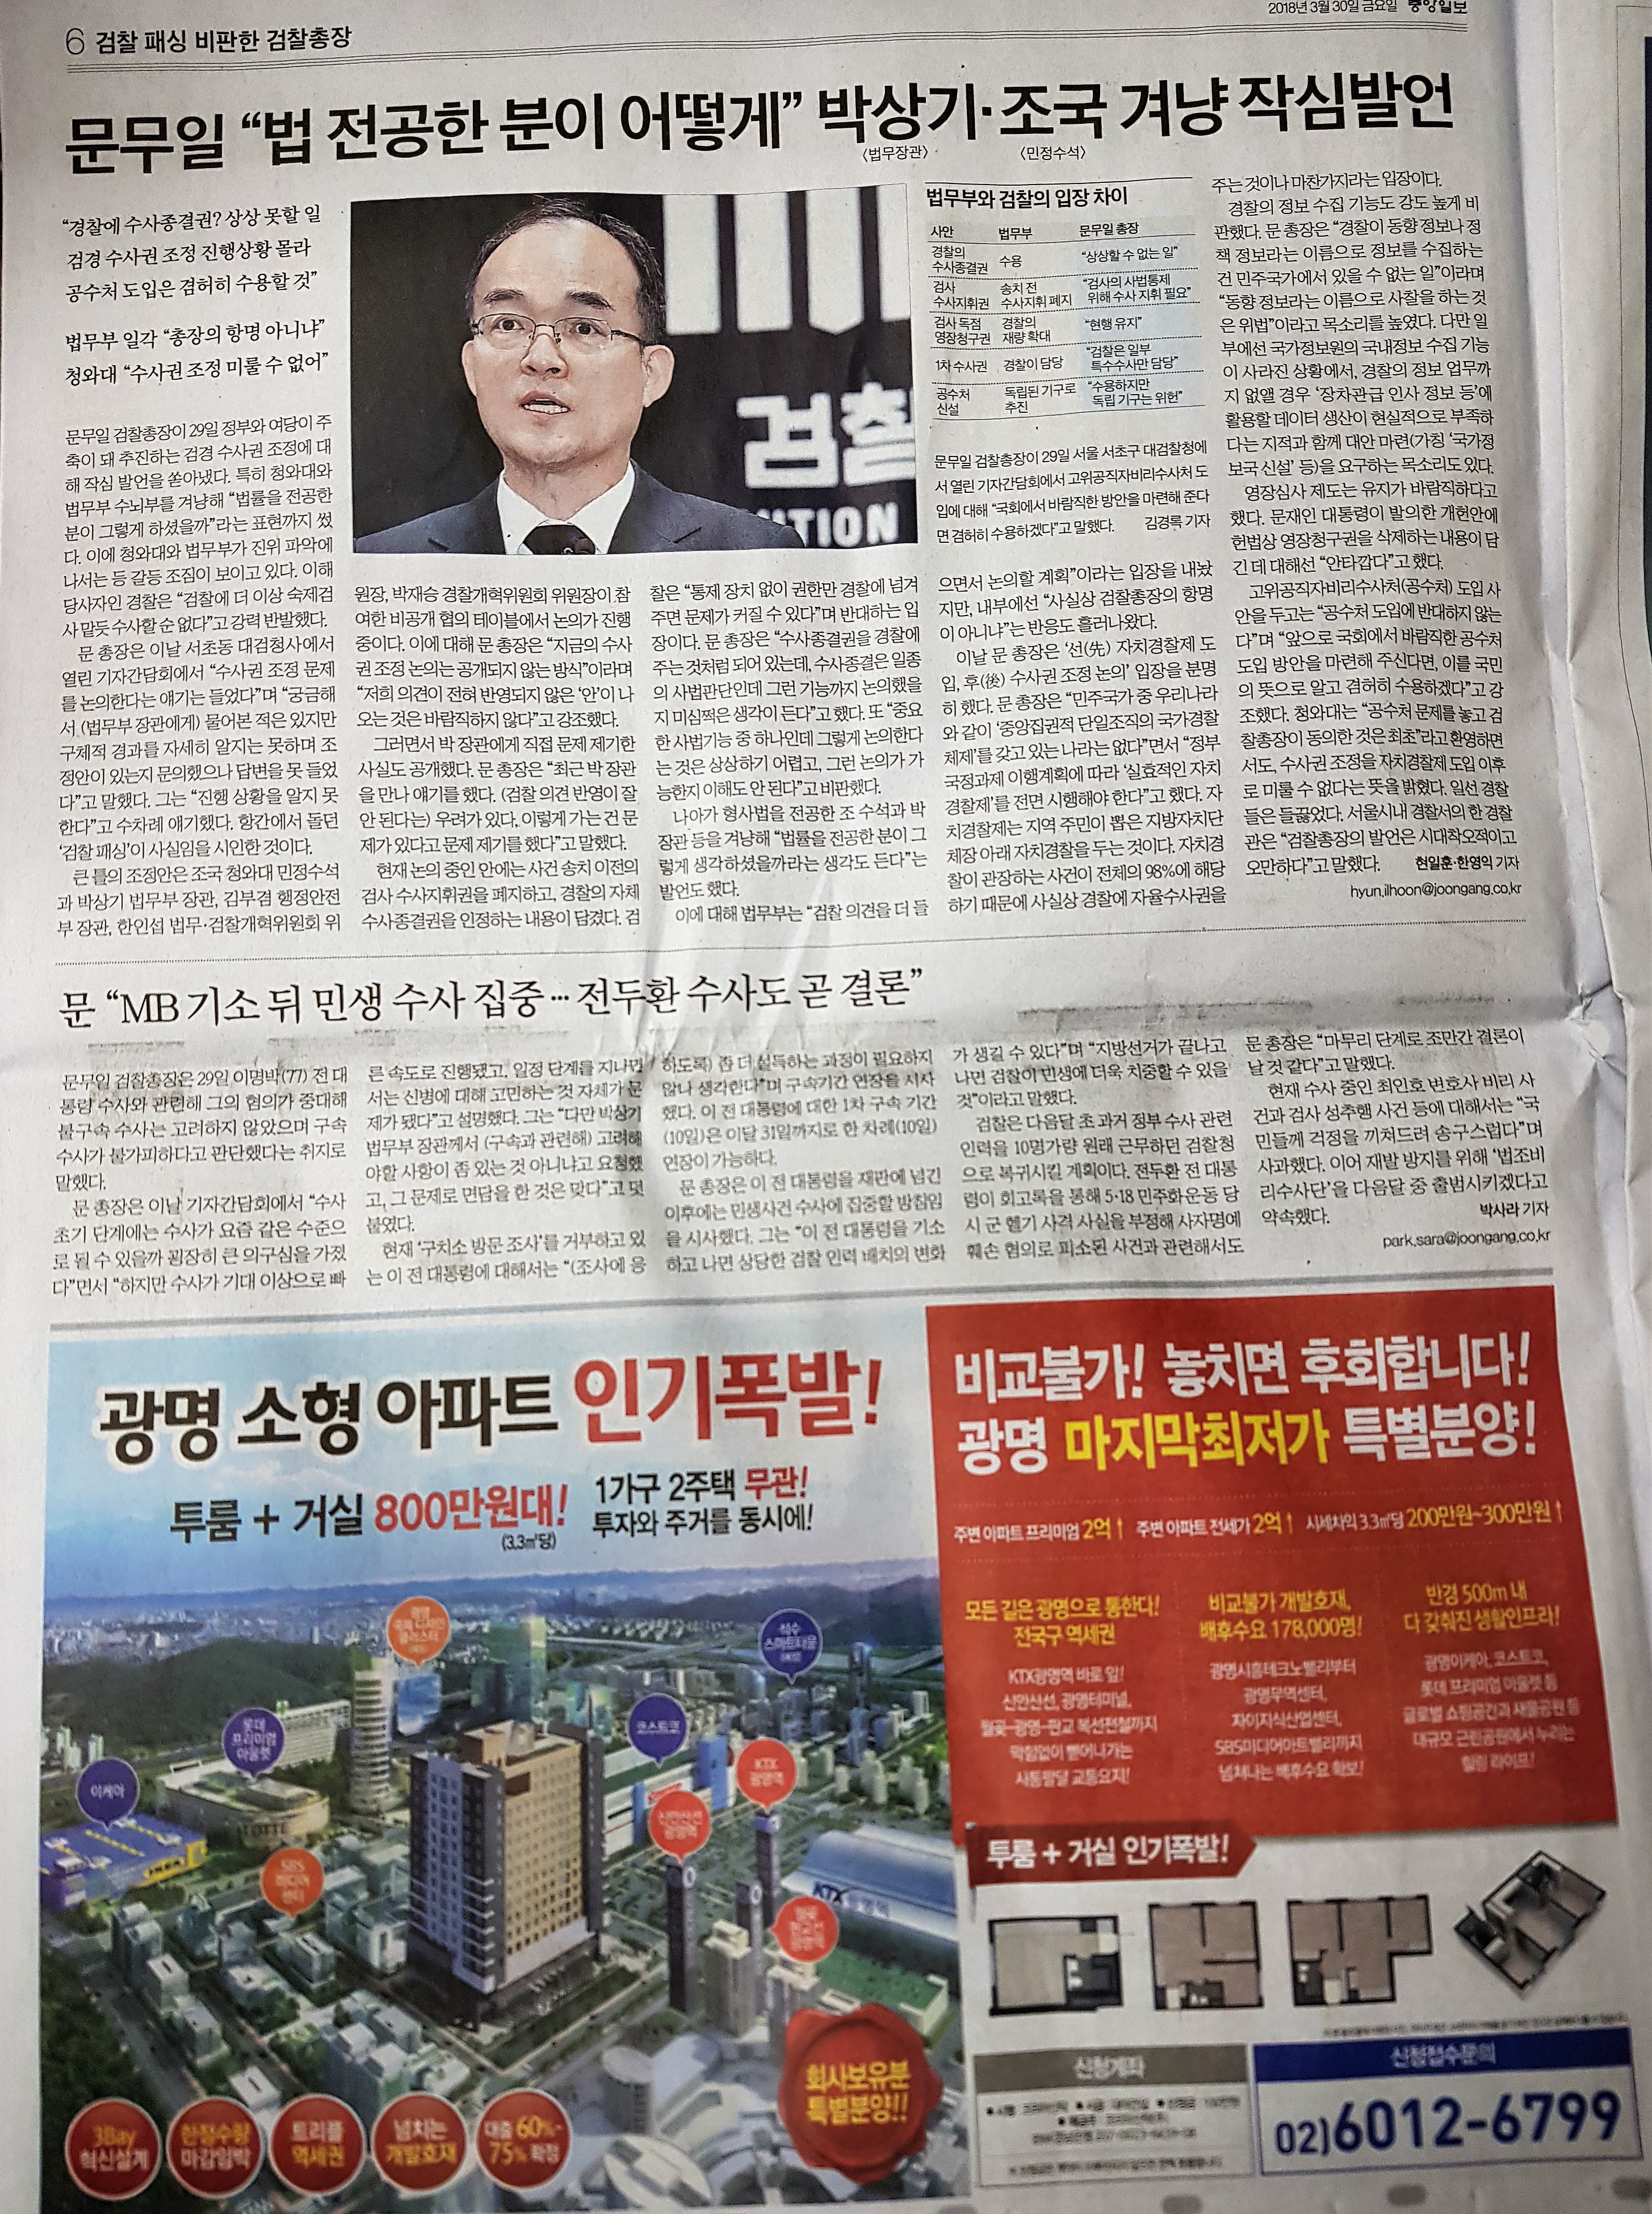 3월30일 중앙일보 6 광명역 아이디에스.jpg